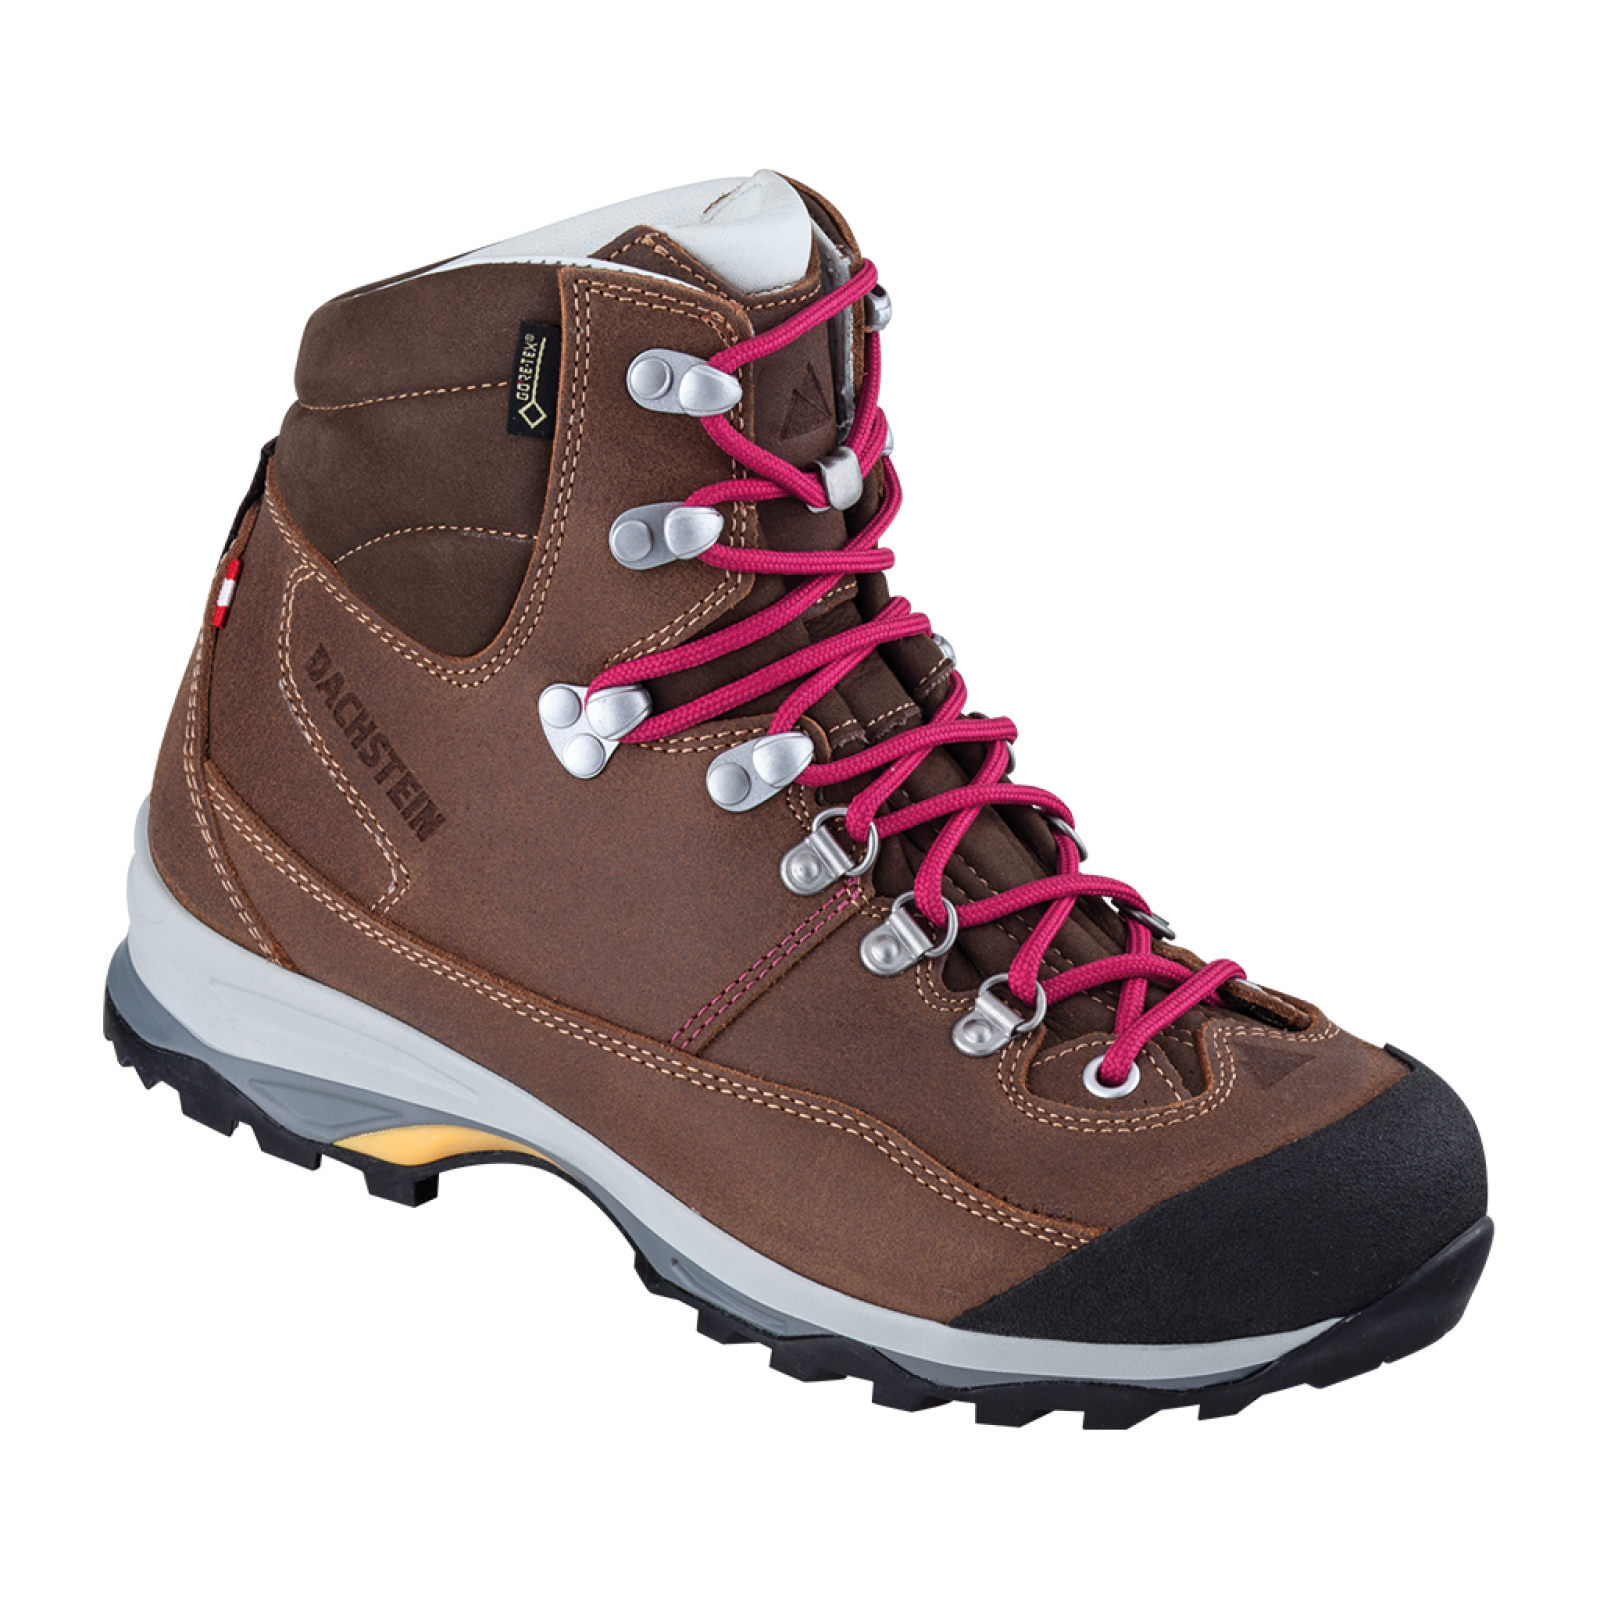 Dachstein Ramsau 2.0 GTX - Hiking Boots - Women's